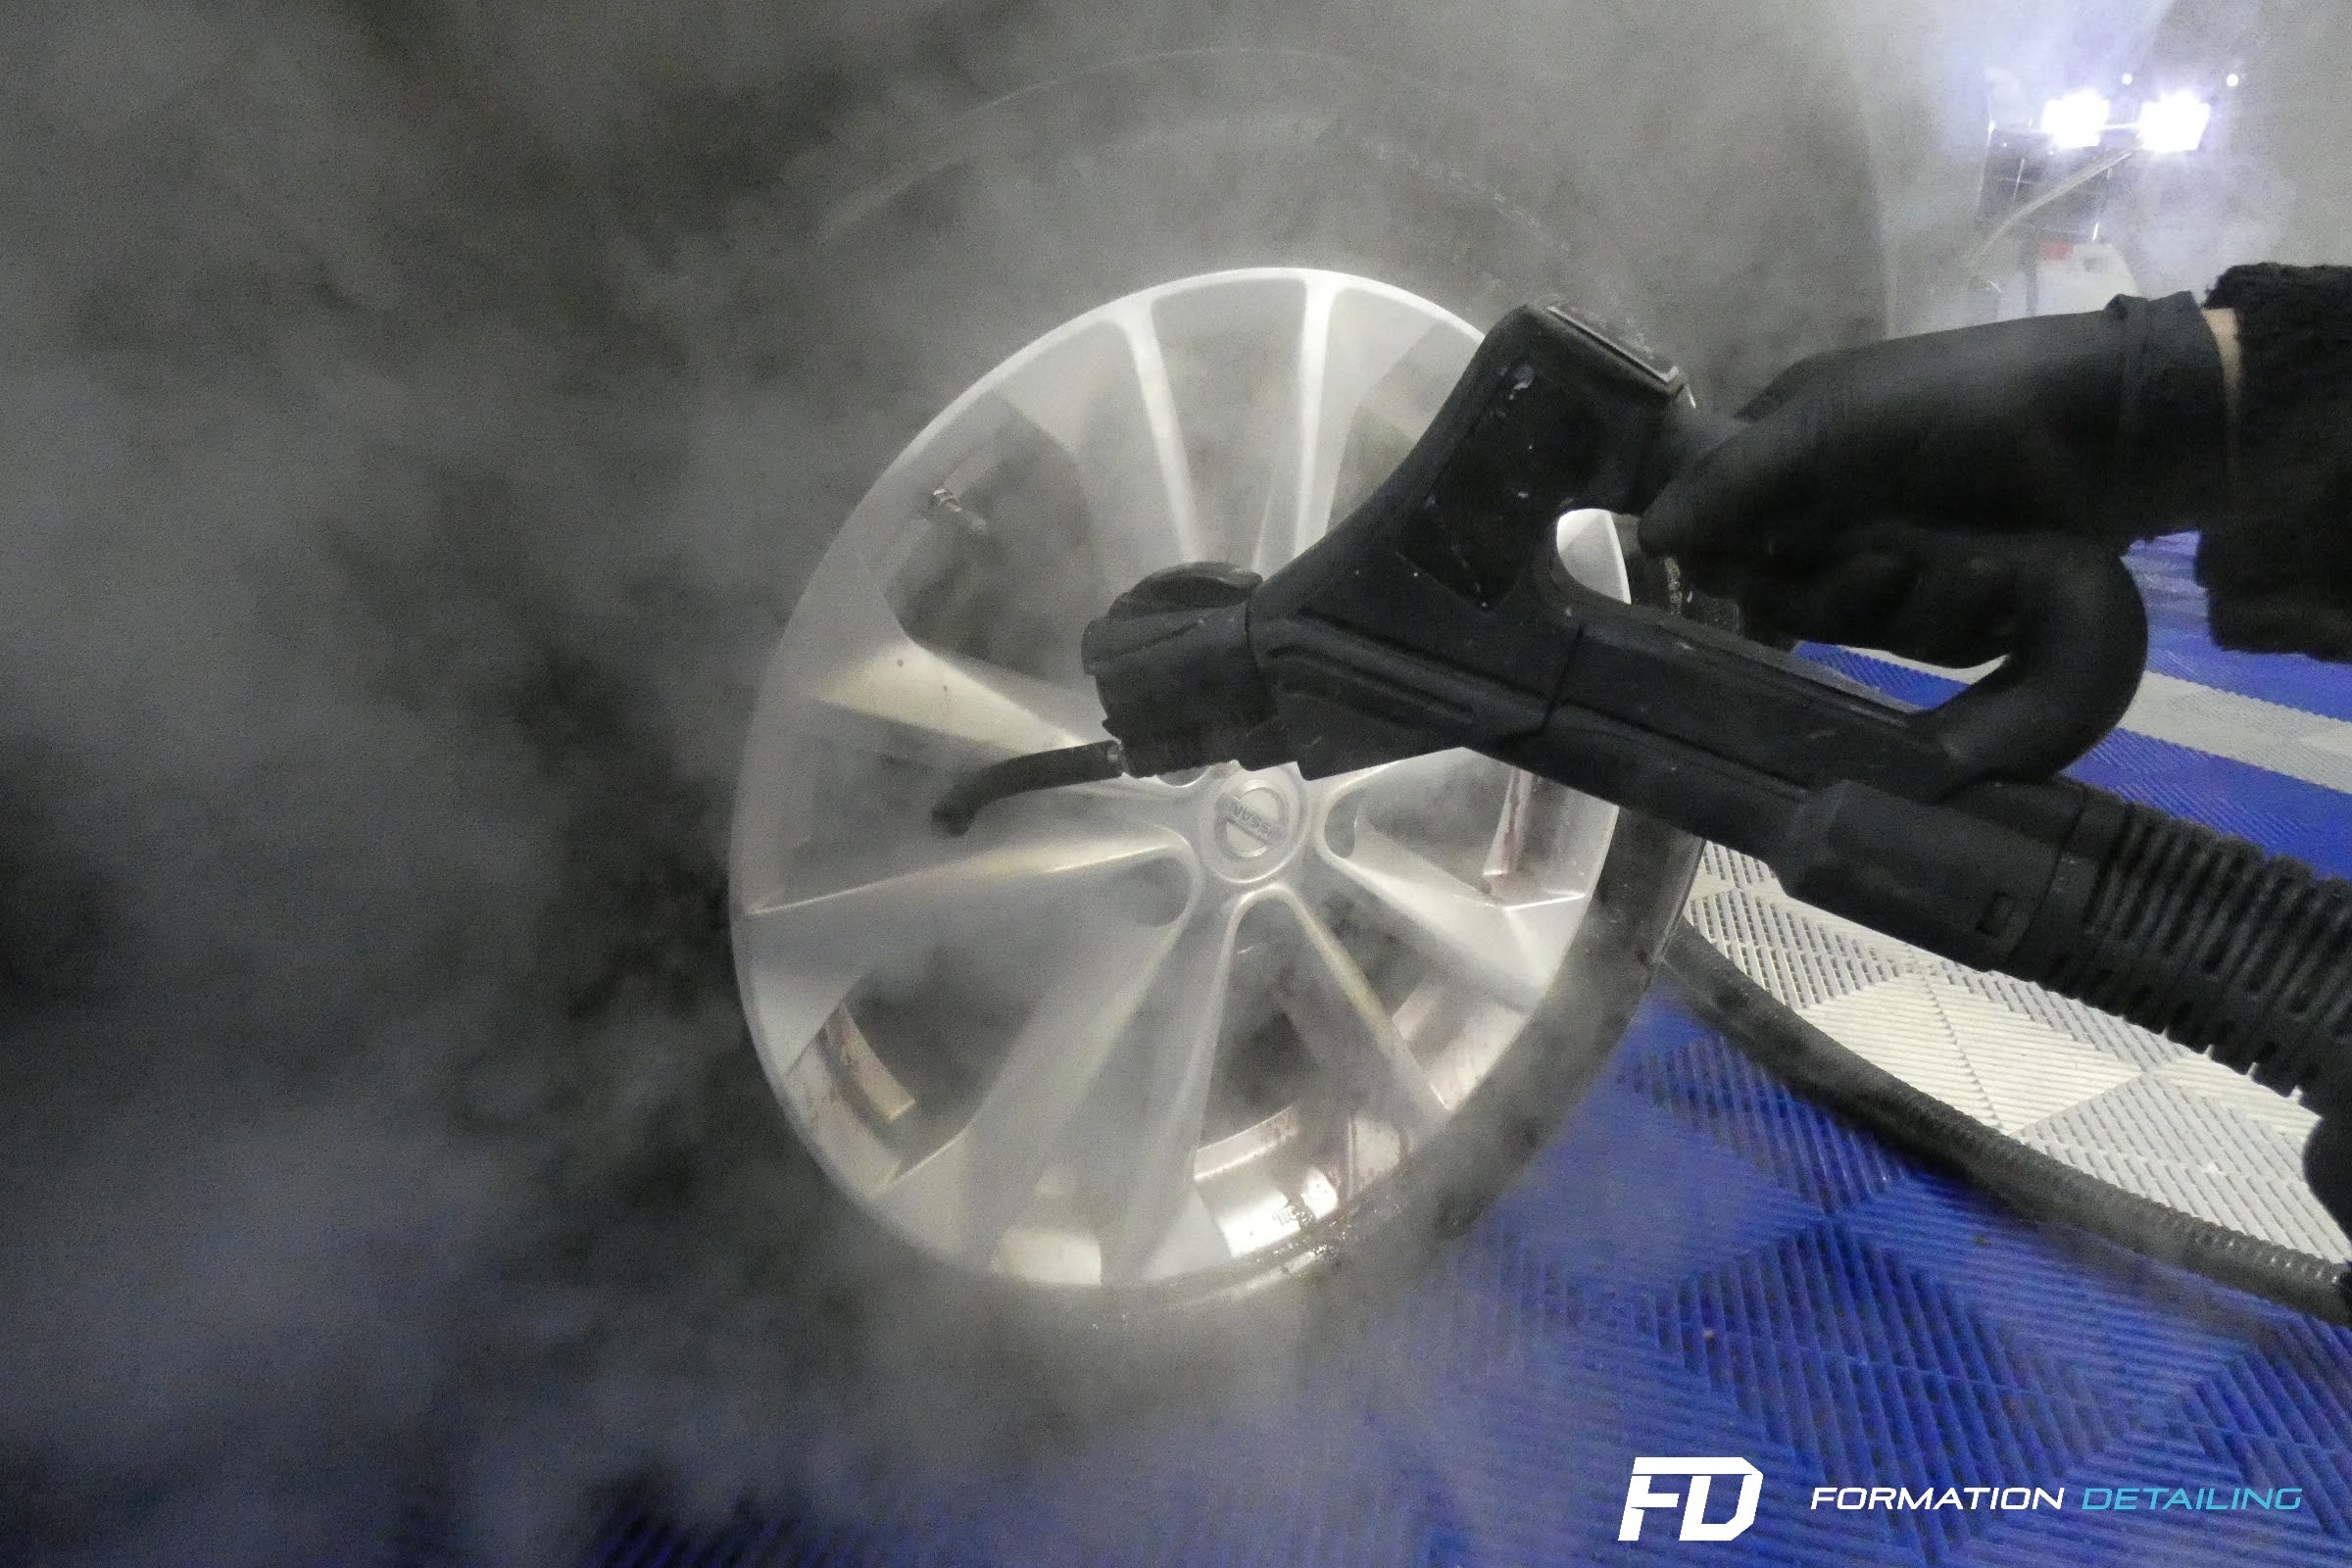 Choisir un nettoyeur vapeur automobile ou sans eau ? - Formation Detailing